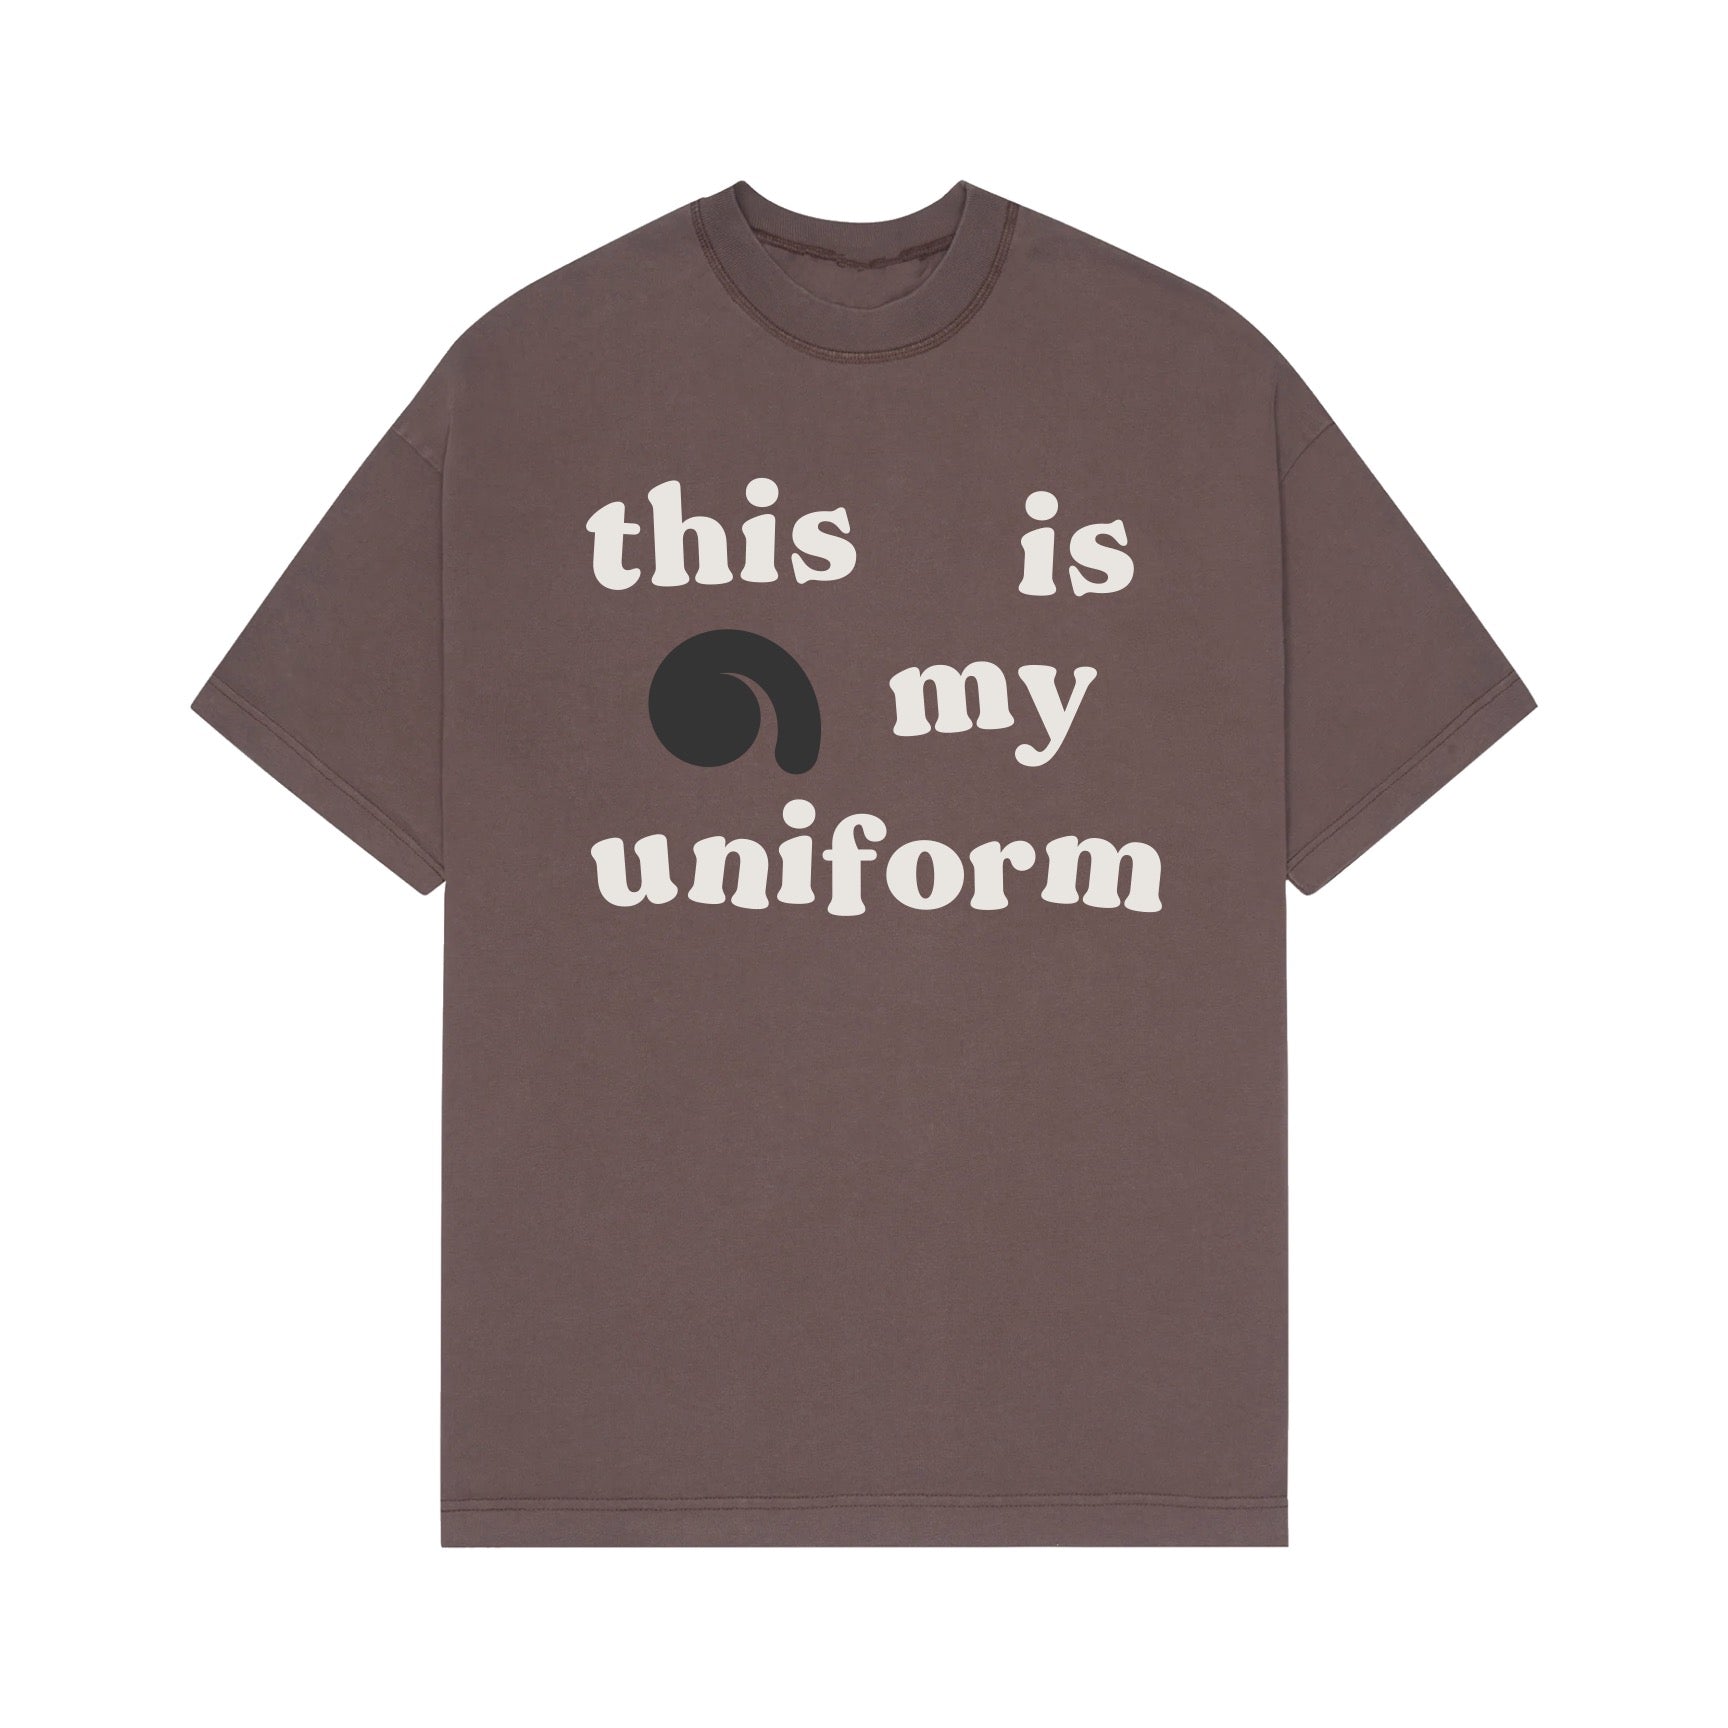 This is my uniform T-shirt - Mushroom